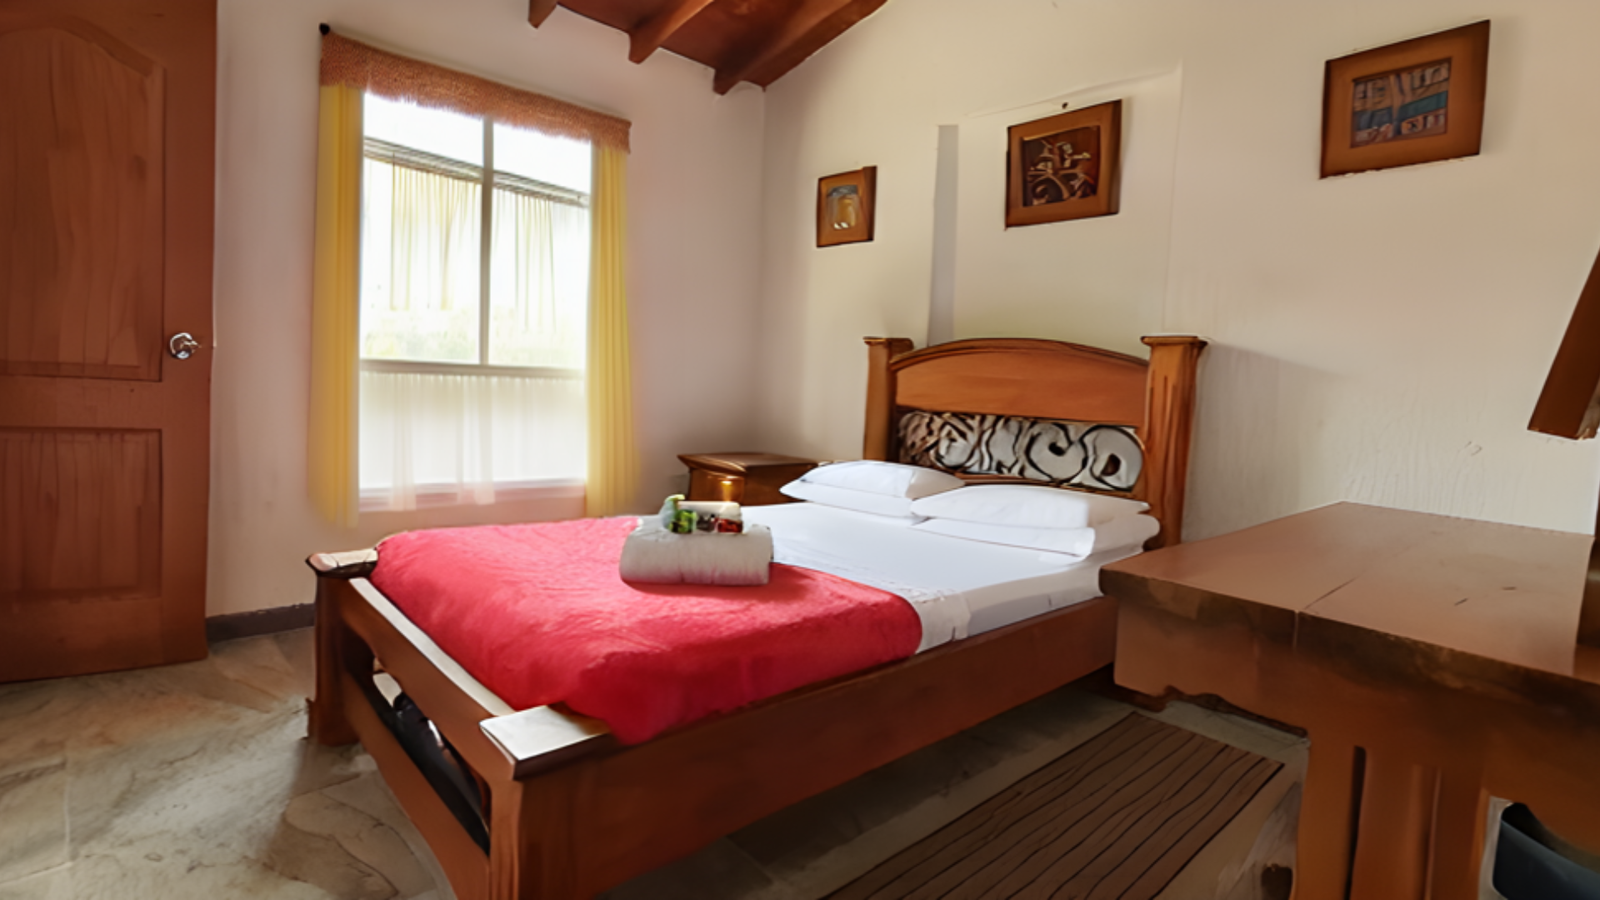 Habitación sencilla en Hotel Swinger Medellín - Hotel Fantasy Resort, comodidad y privacidad para parejas.